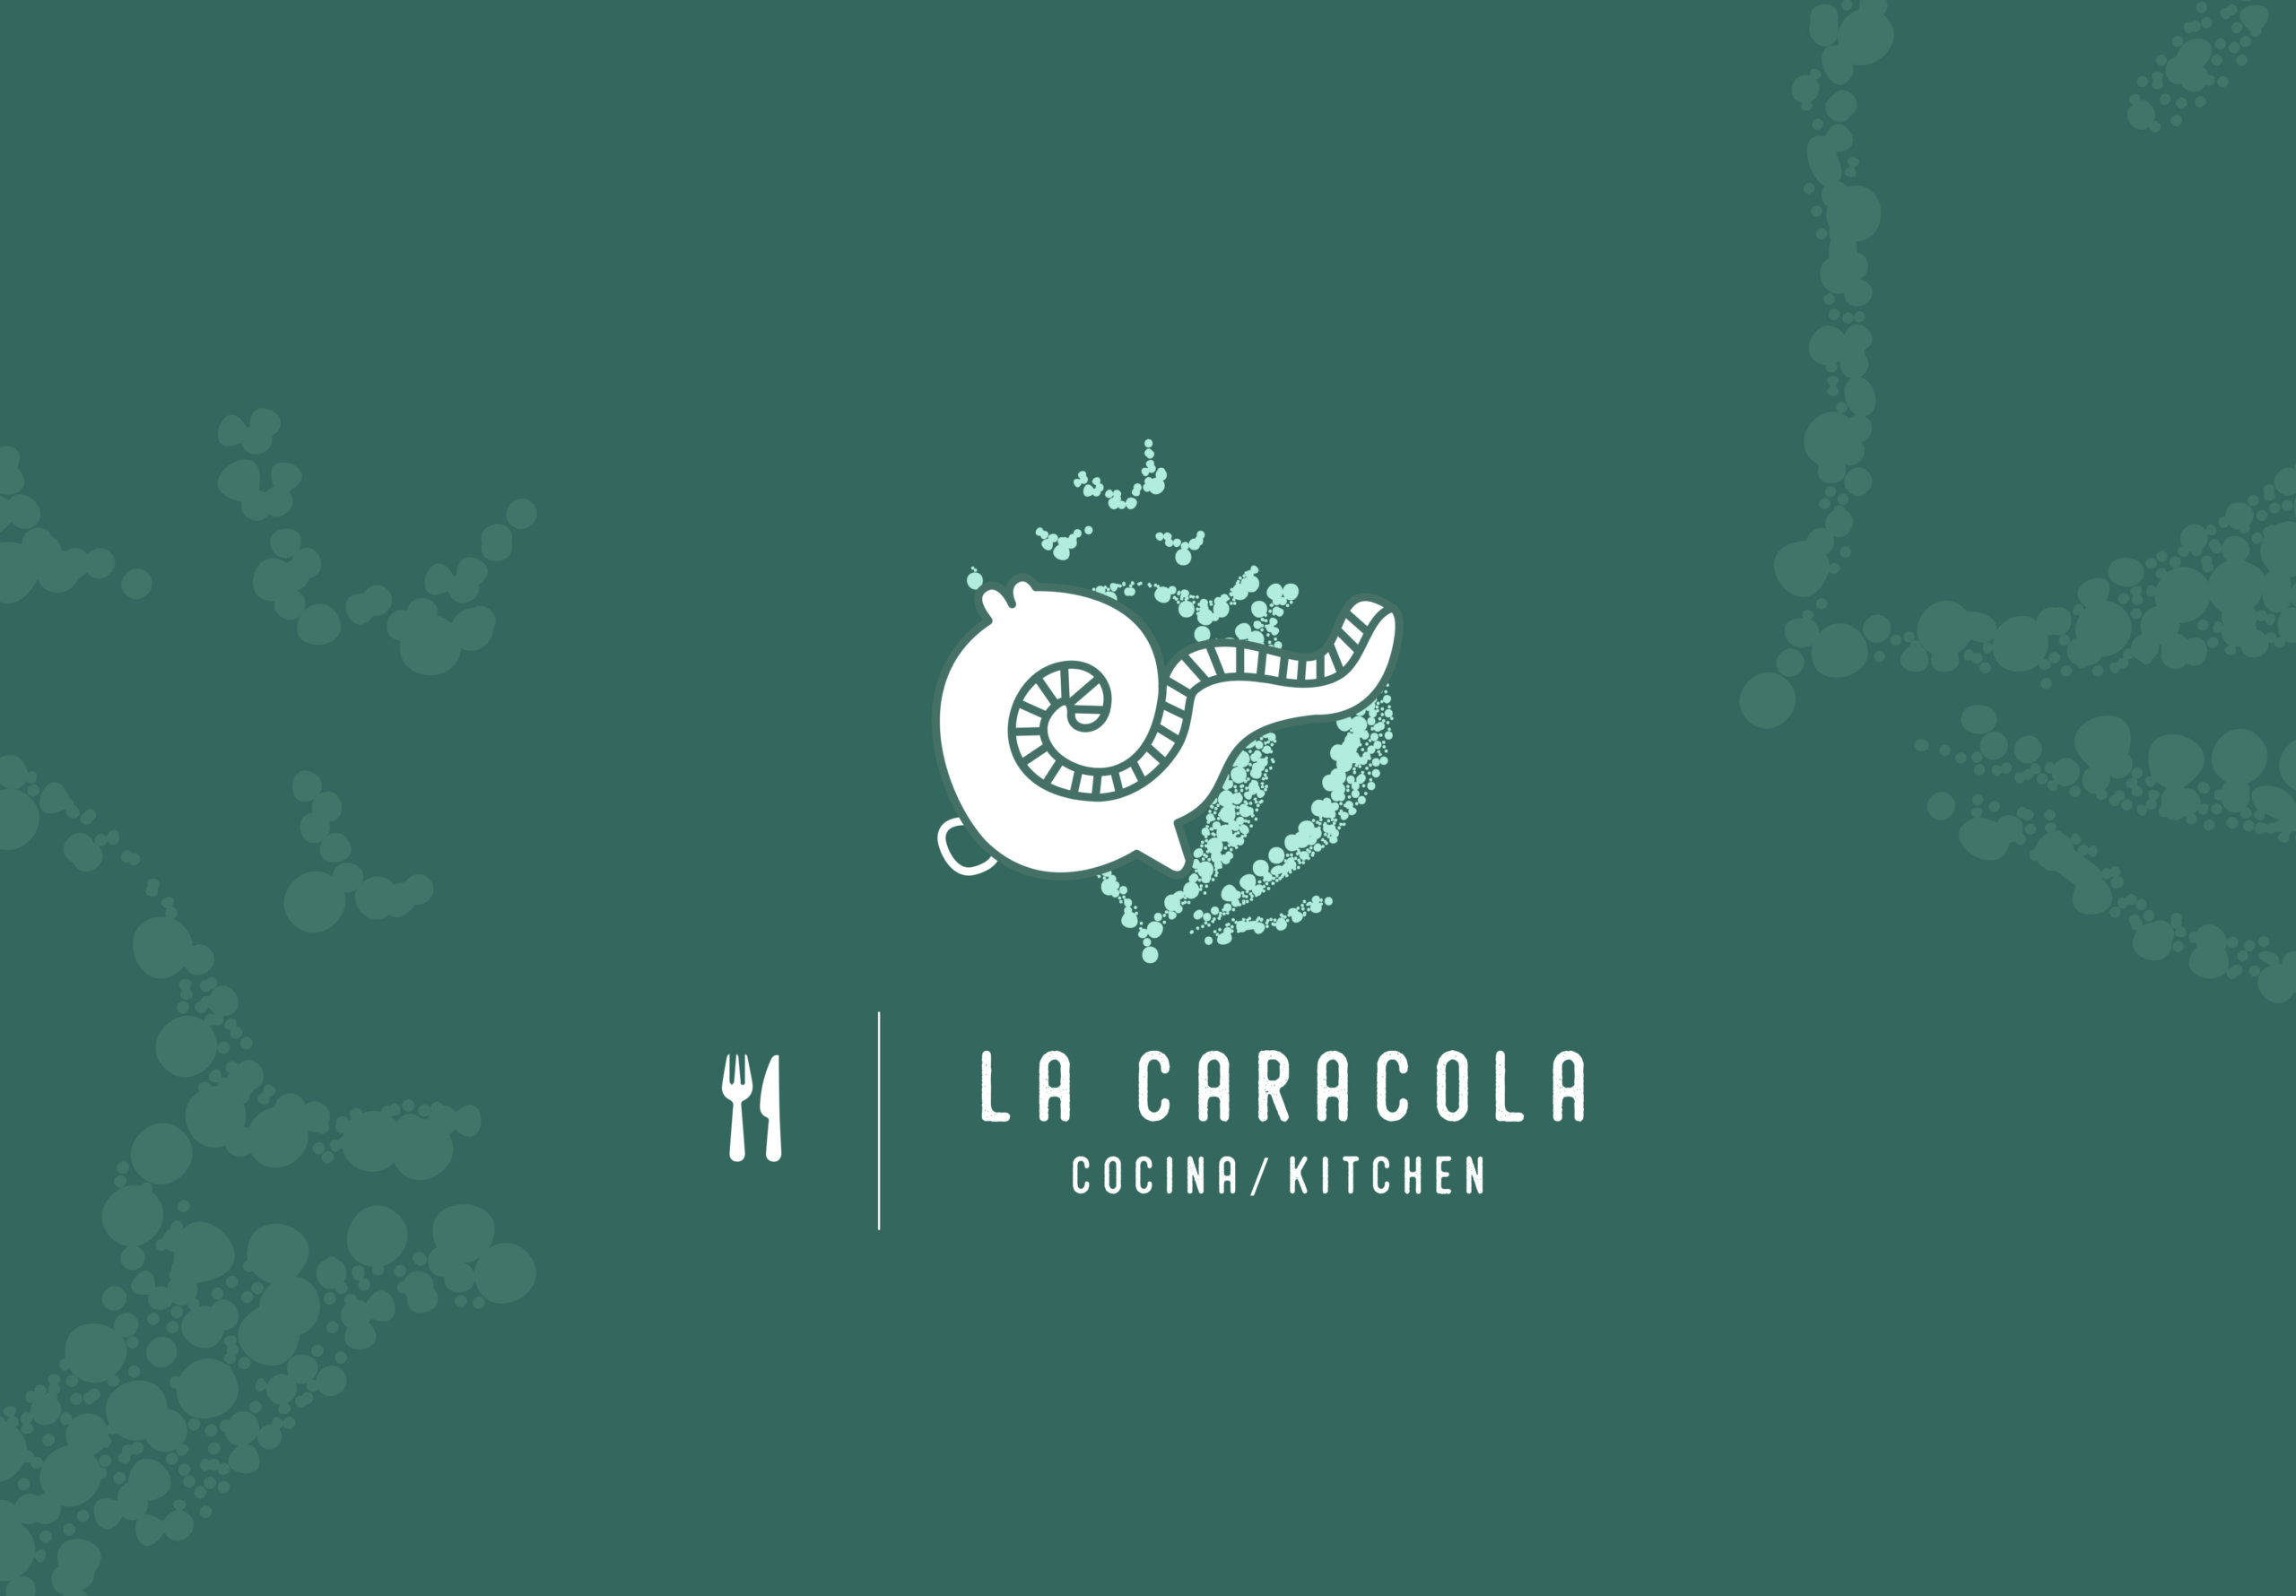 La caracola, logo blanco con verde, Cozumel